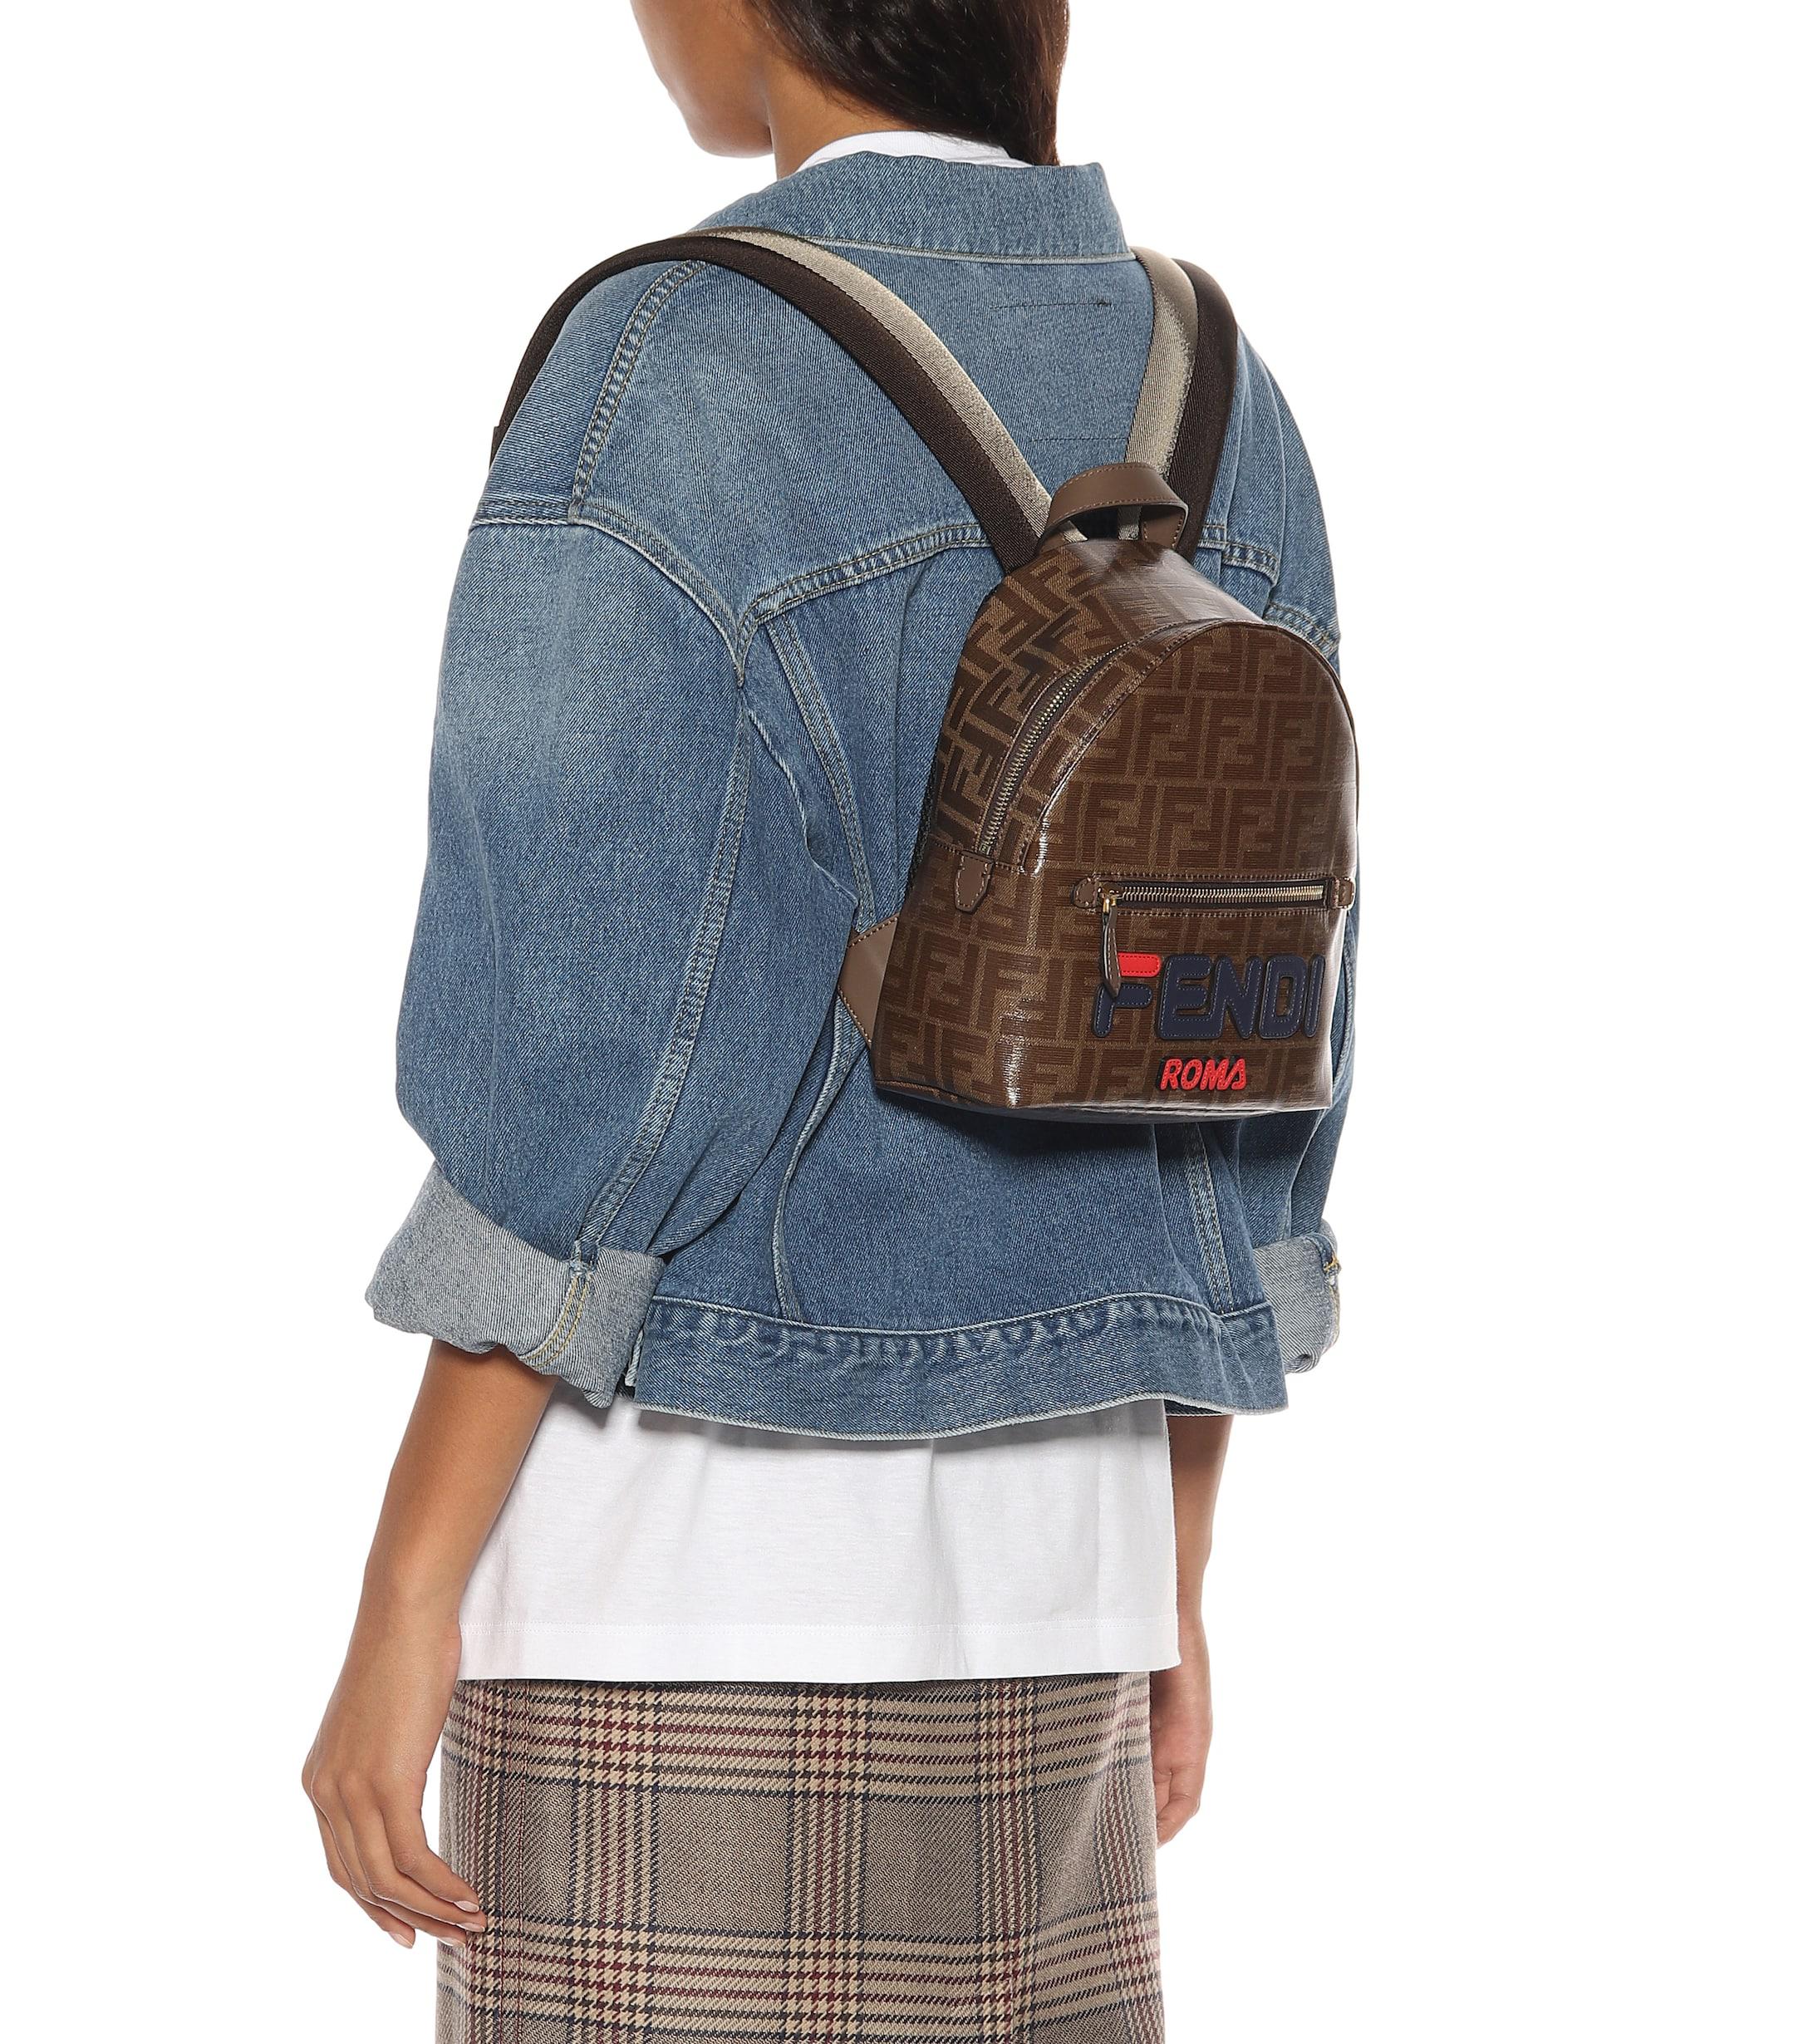 fendi small backpack